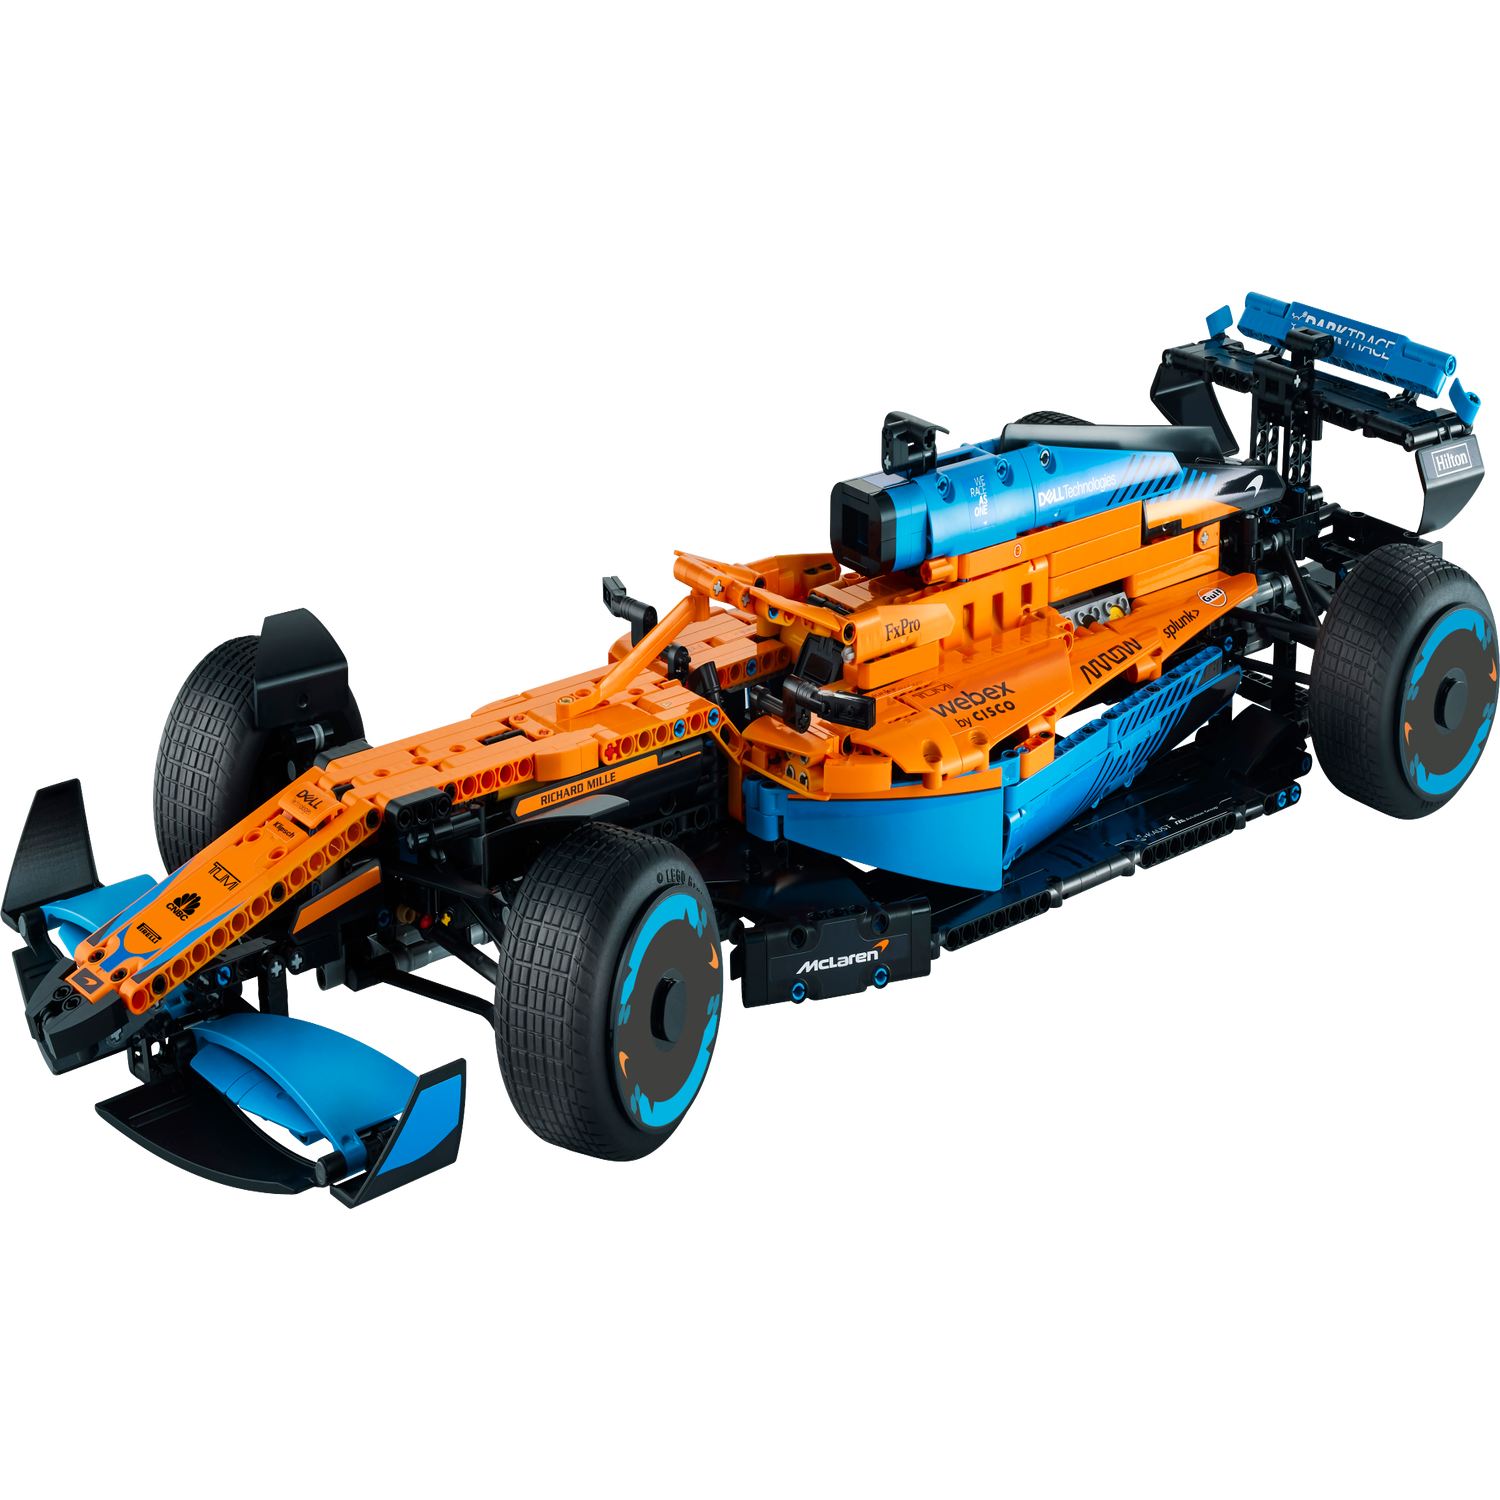 LEGO Technic - Coche de Carreras McLaren Formula 1 - 42141, Lego Dc Super  Heroes